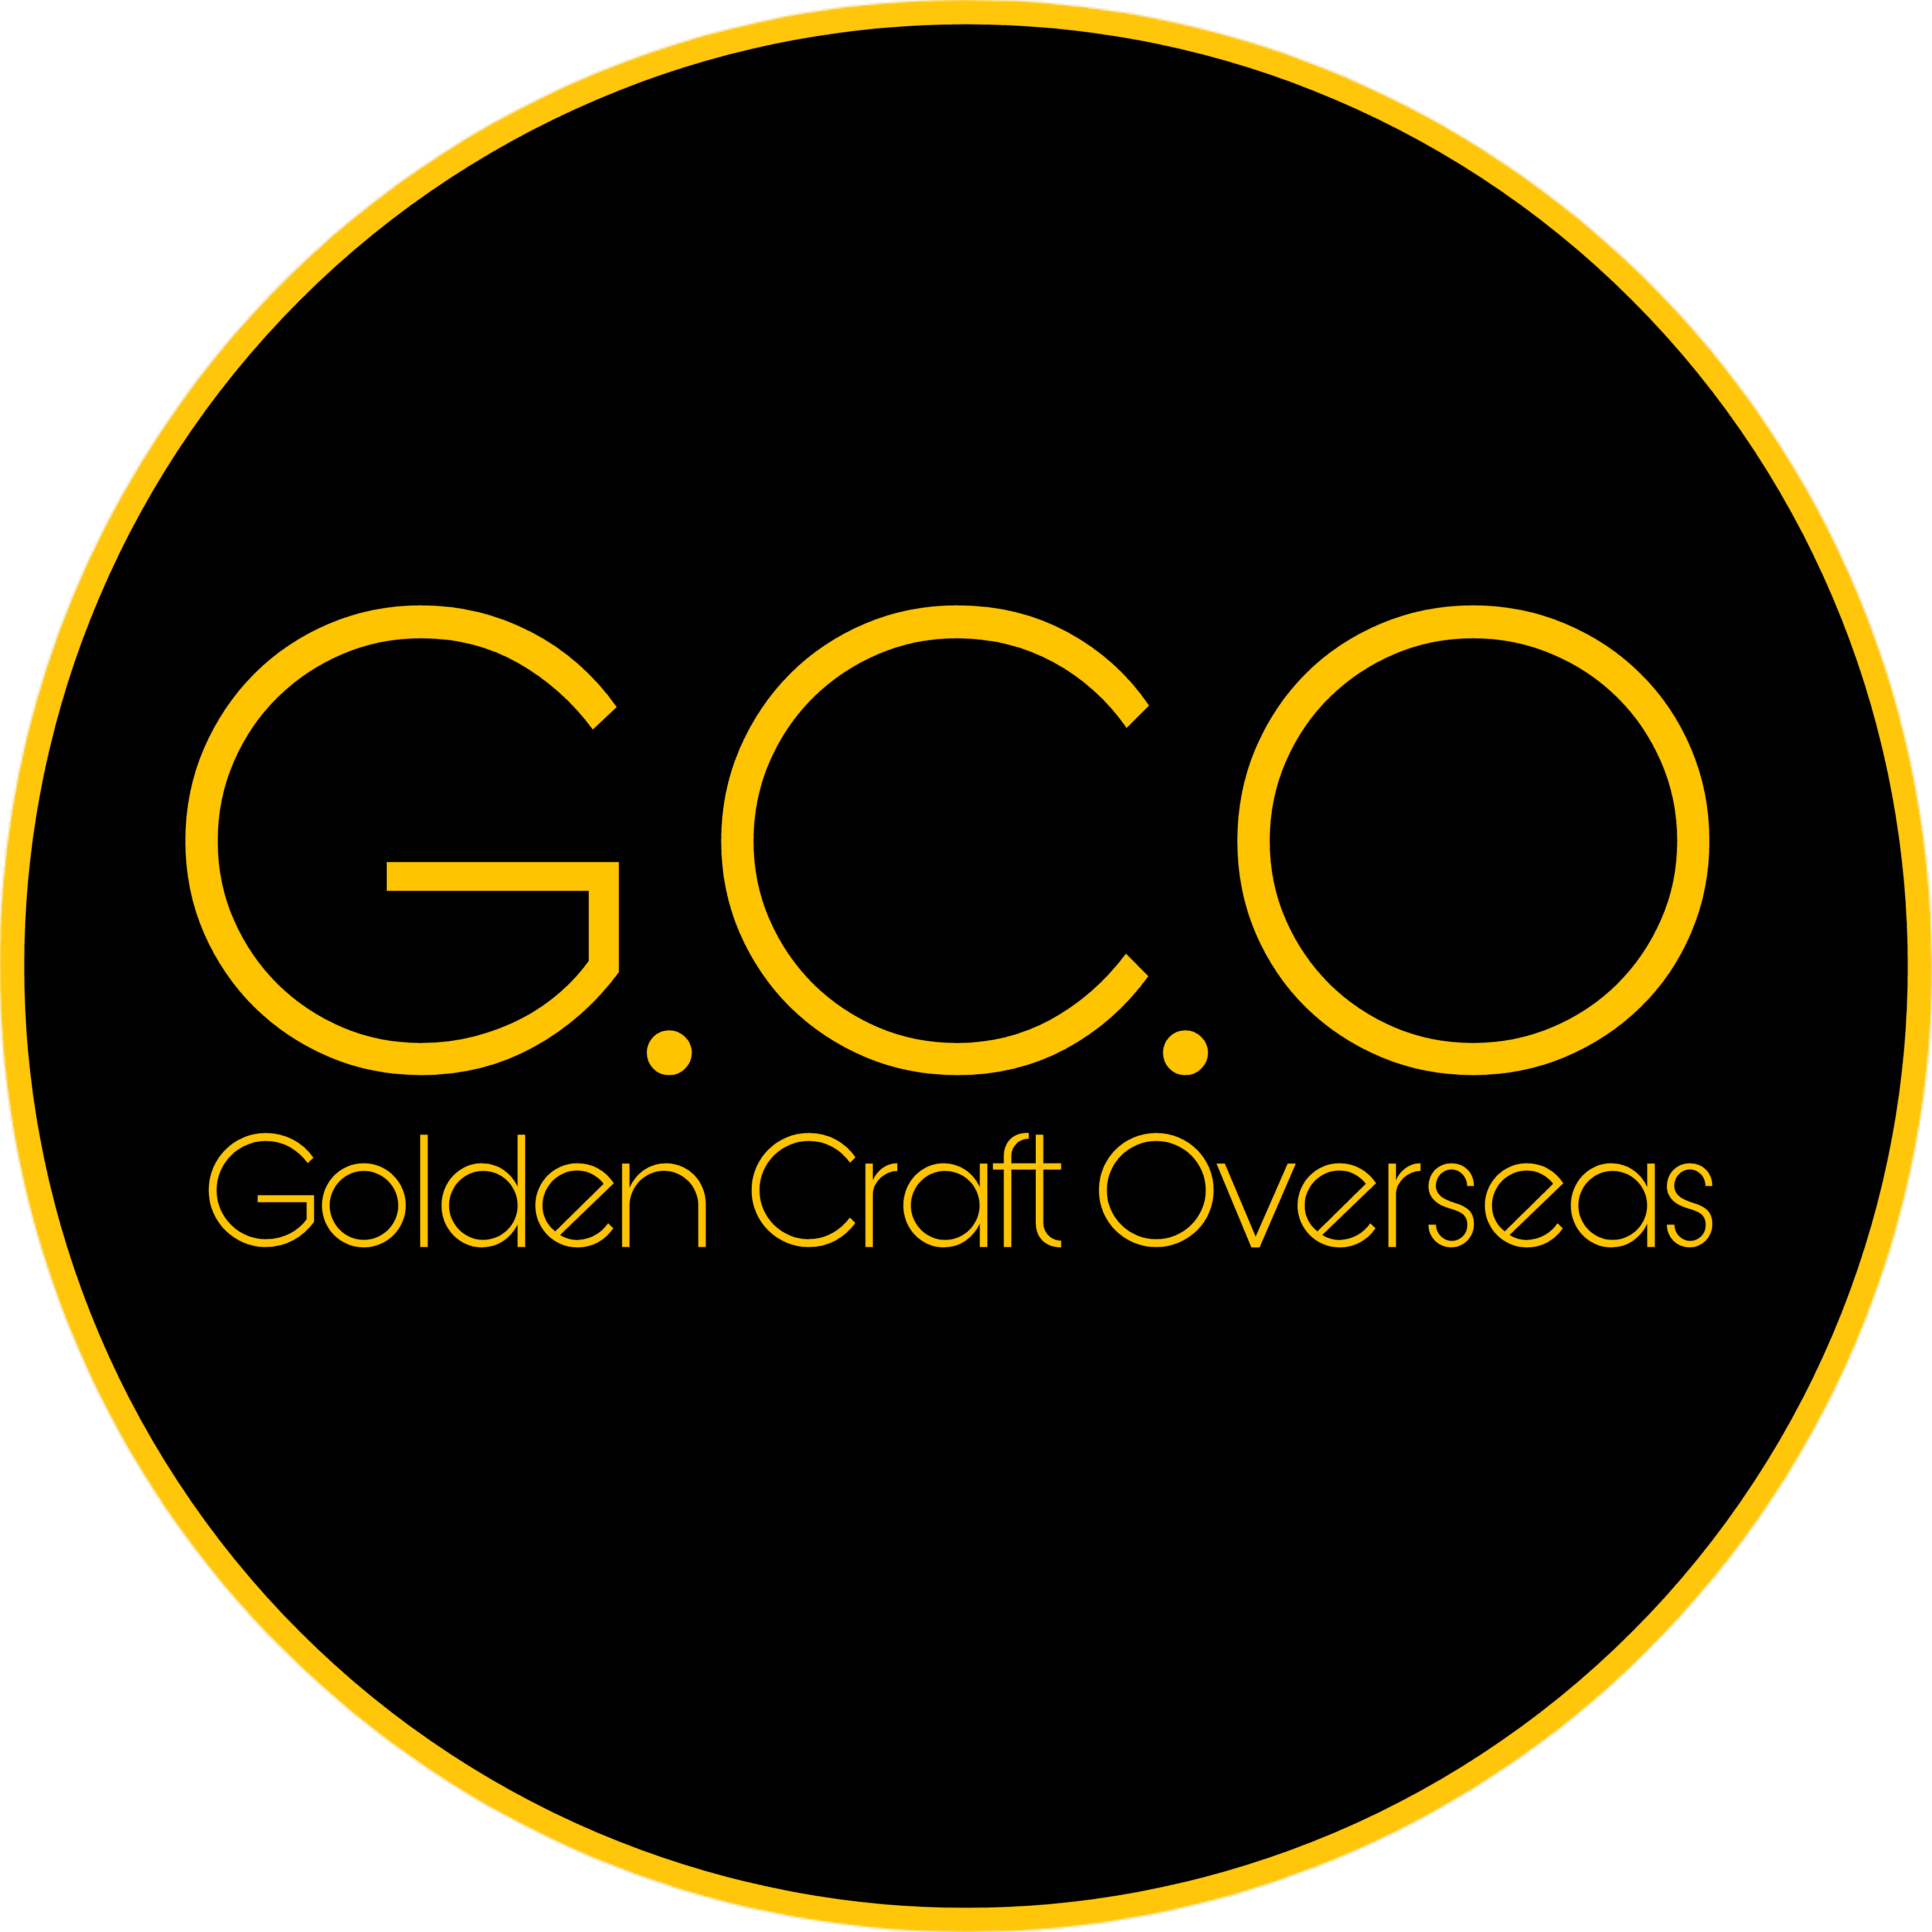 GOLDEN CRAFT OVERSEAS